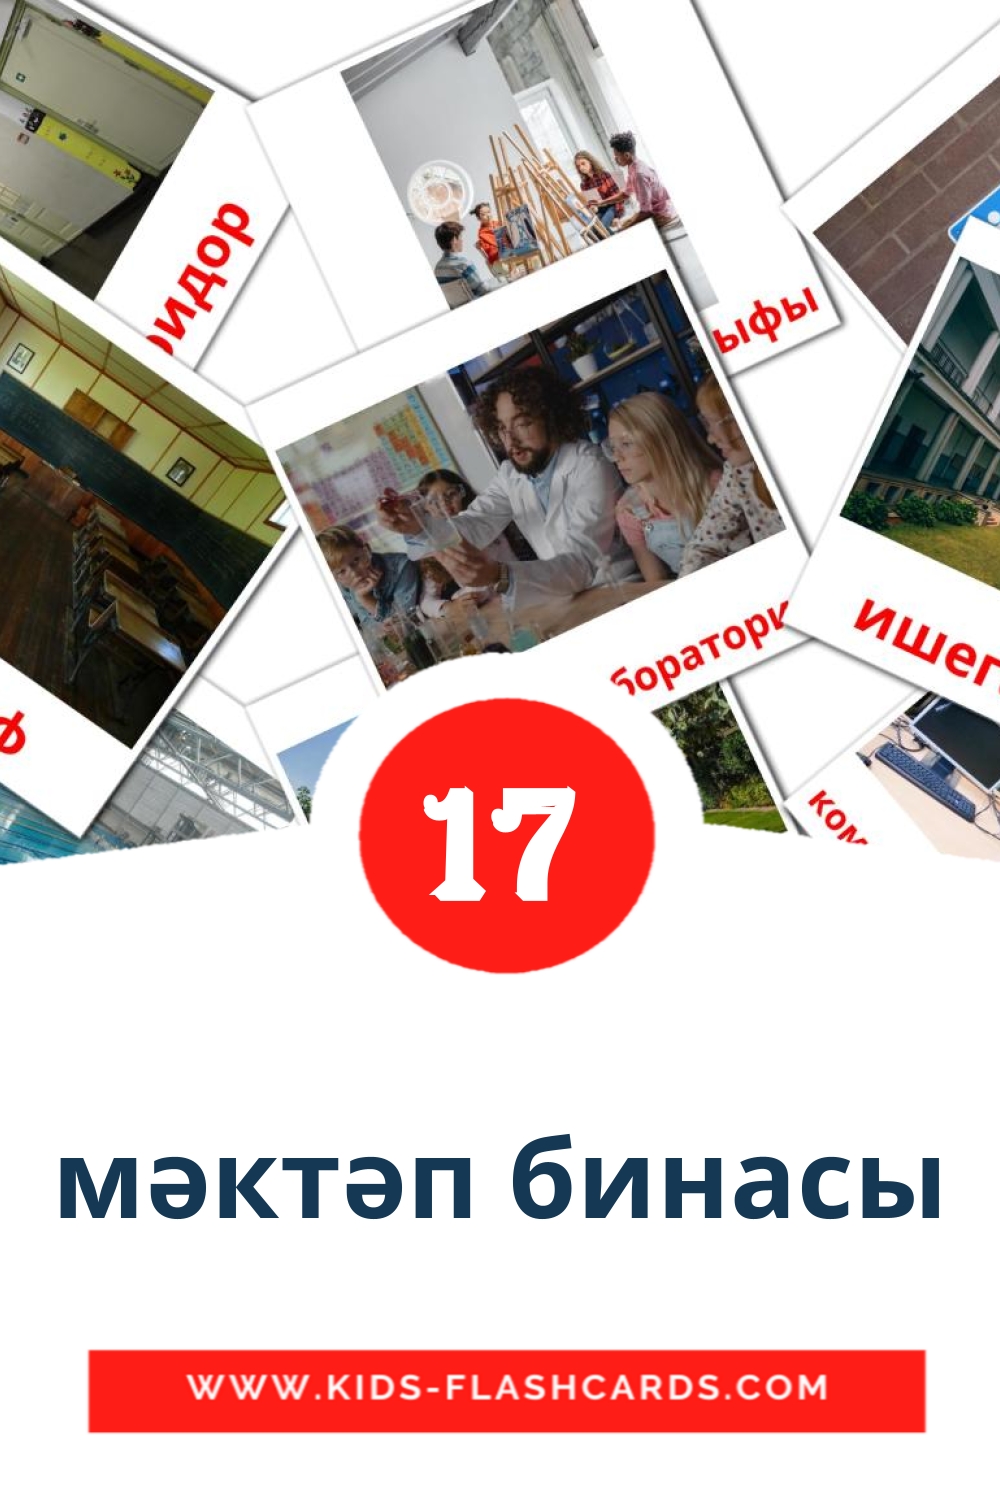 17 Мәктәп бинасы Bildkarten für den Kindergarten auf Tatar